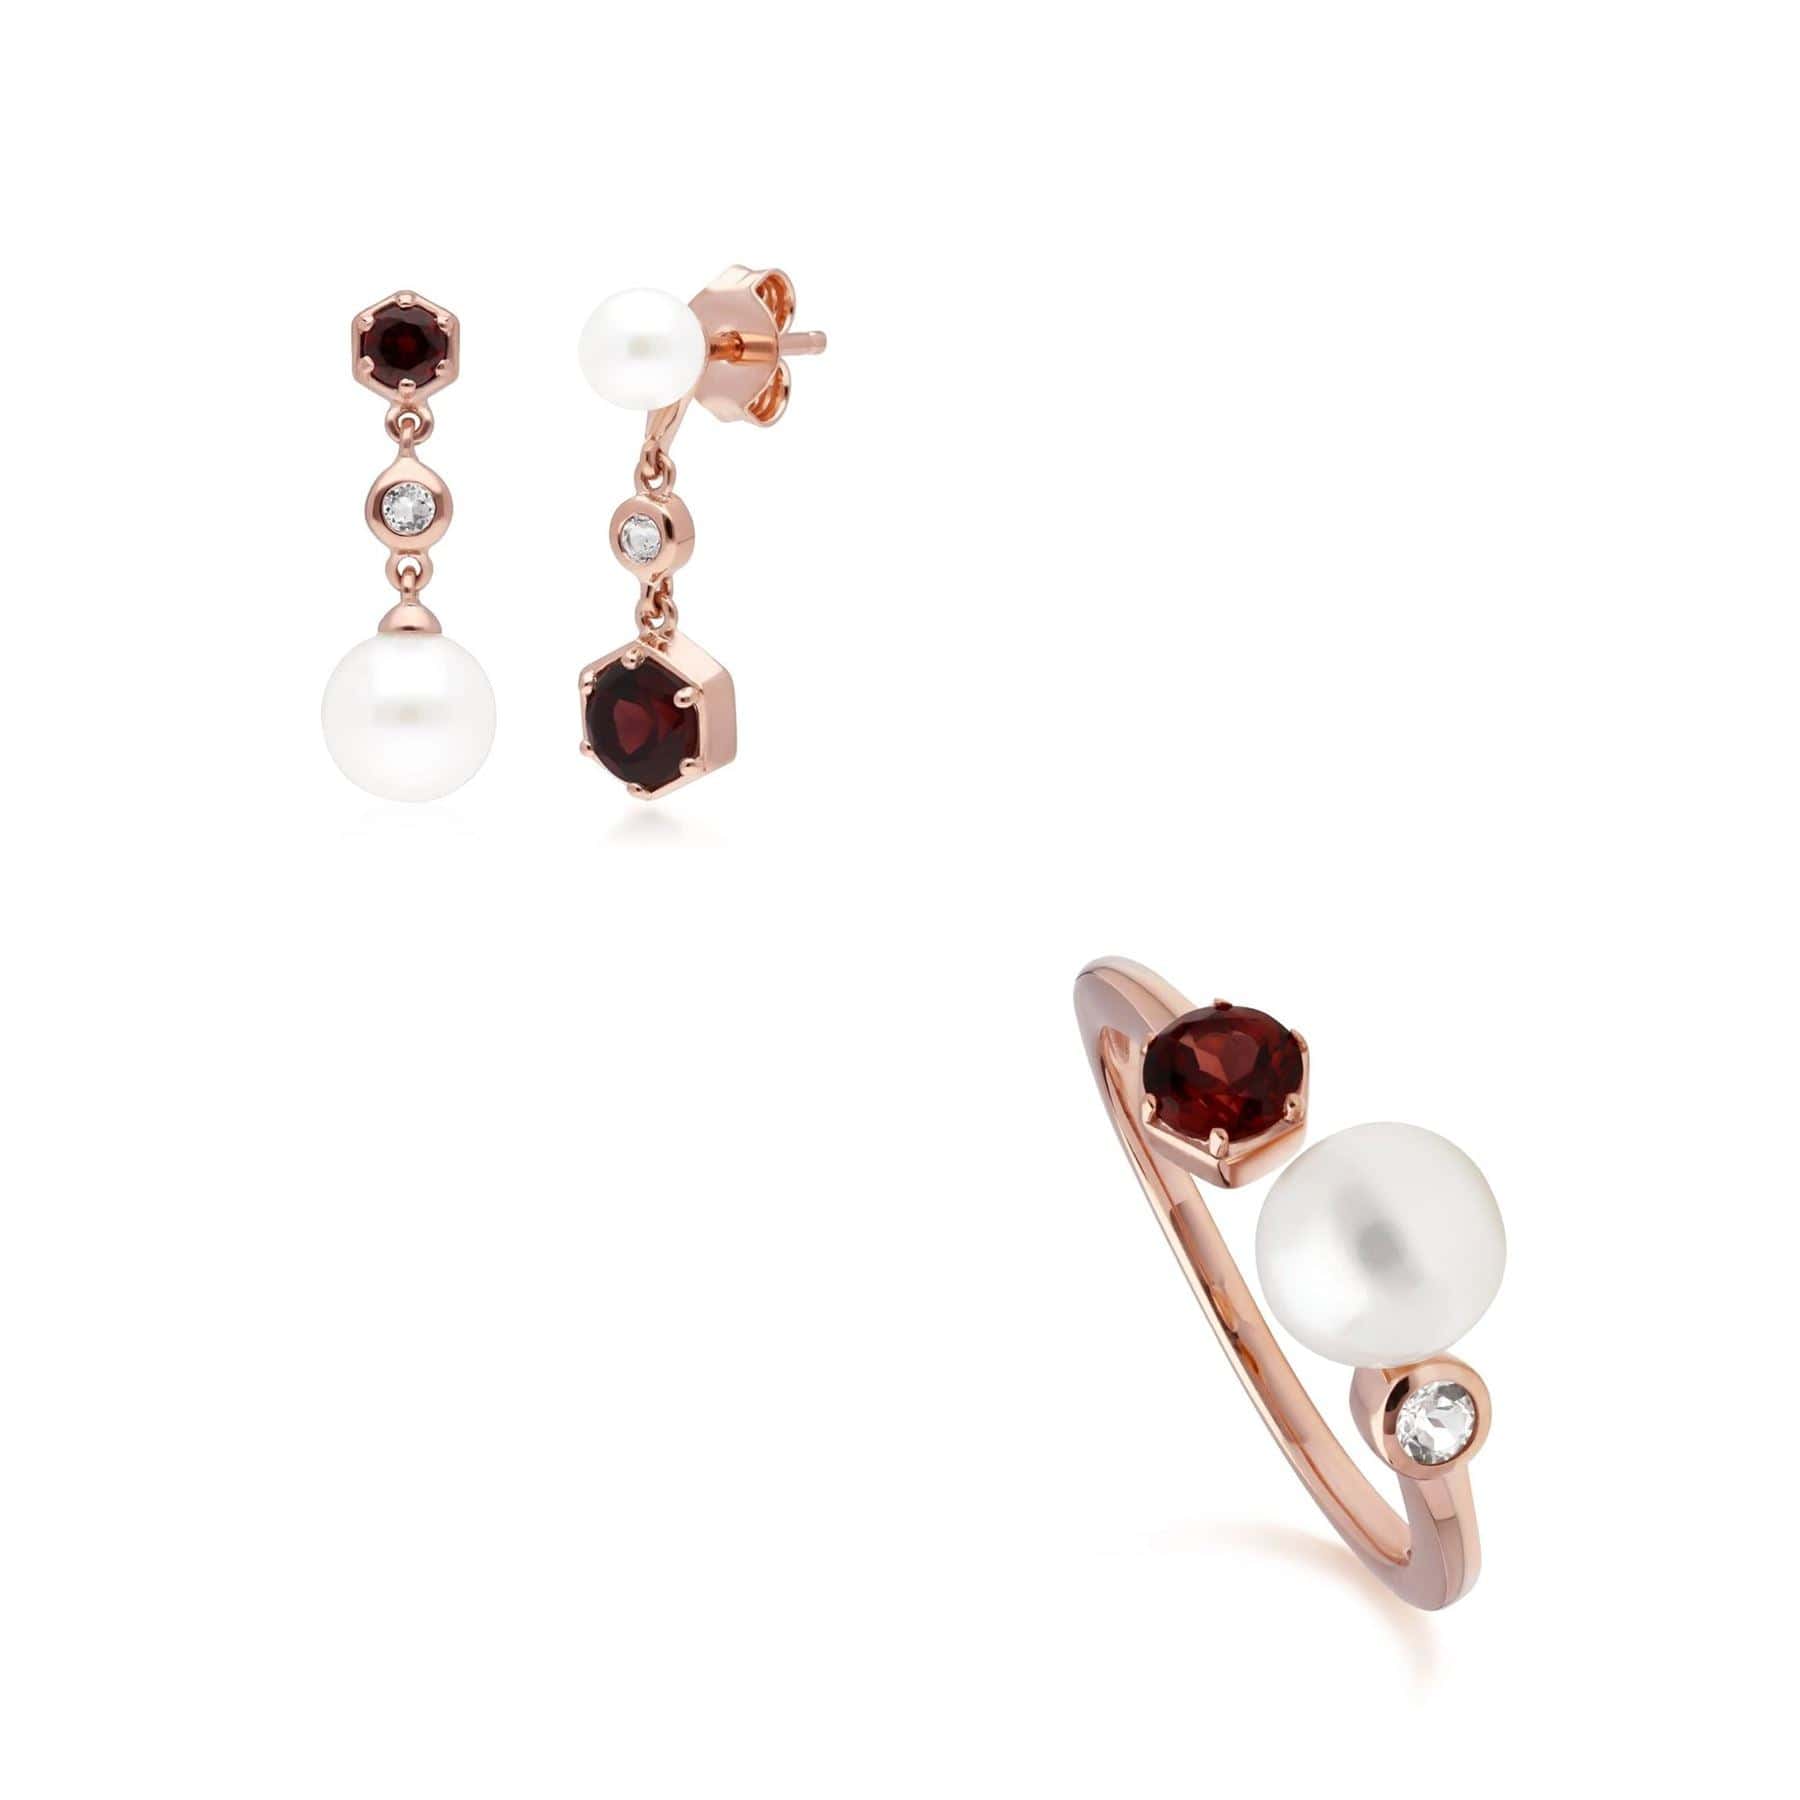 270E030307925-270R058807925 Modern Pearl, Garnet & Topaz Earring & Ring Set in Rose Gold Plated Sterling Silver 1